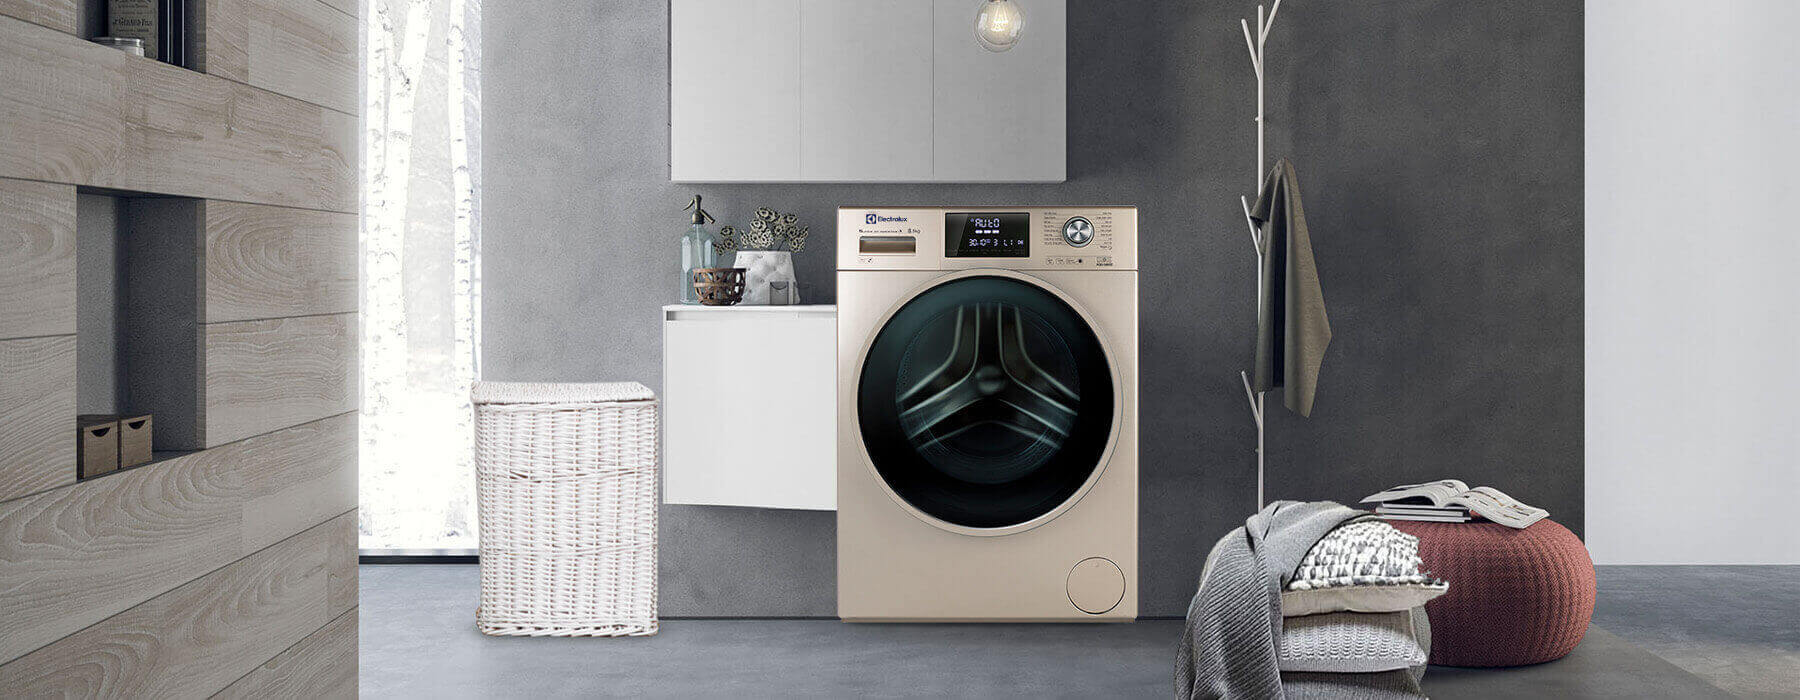 5 lý do không để máy giặt electrolux quá tải